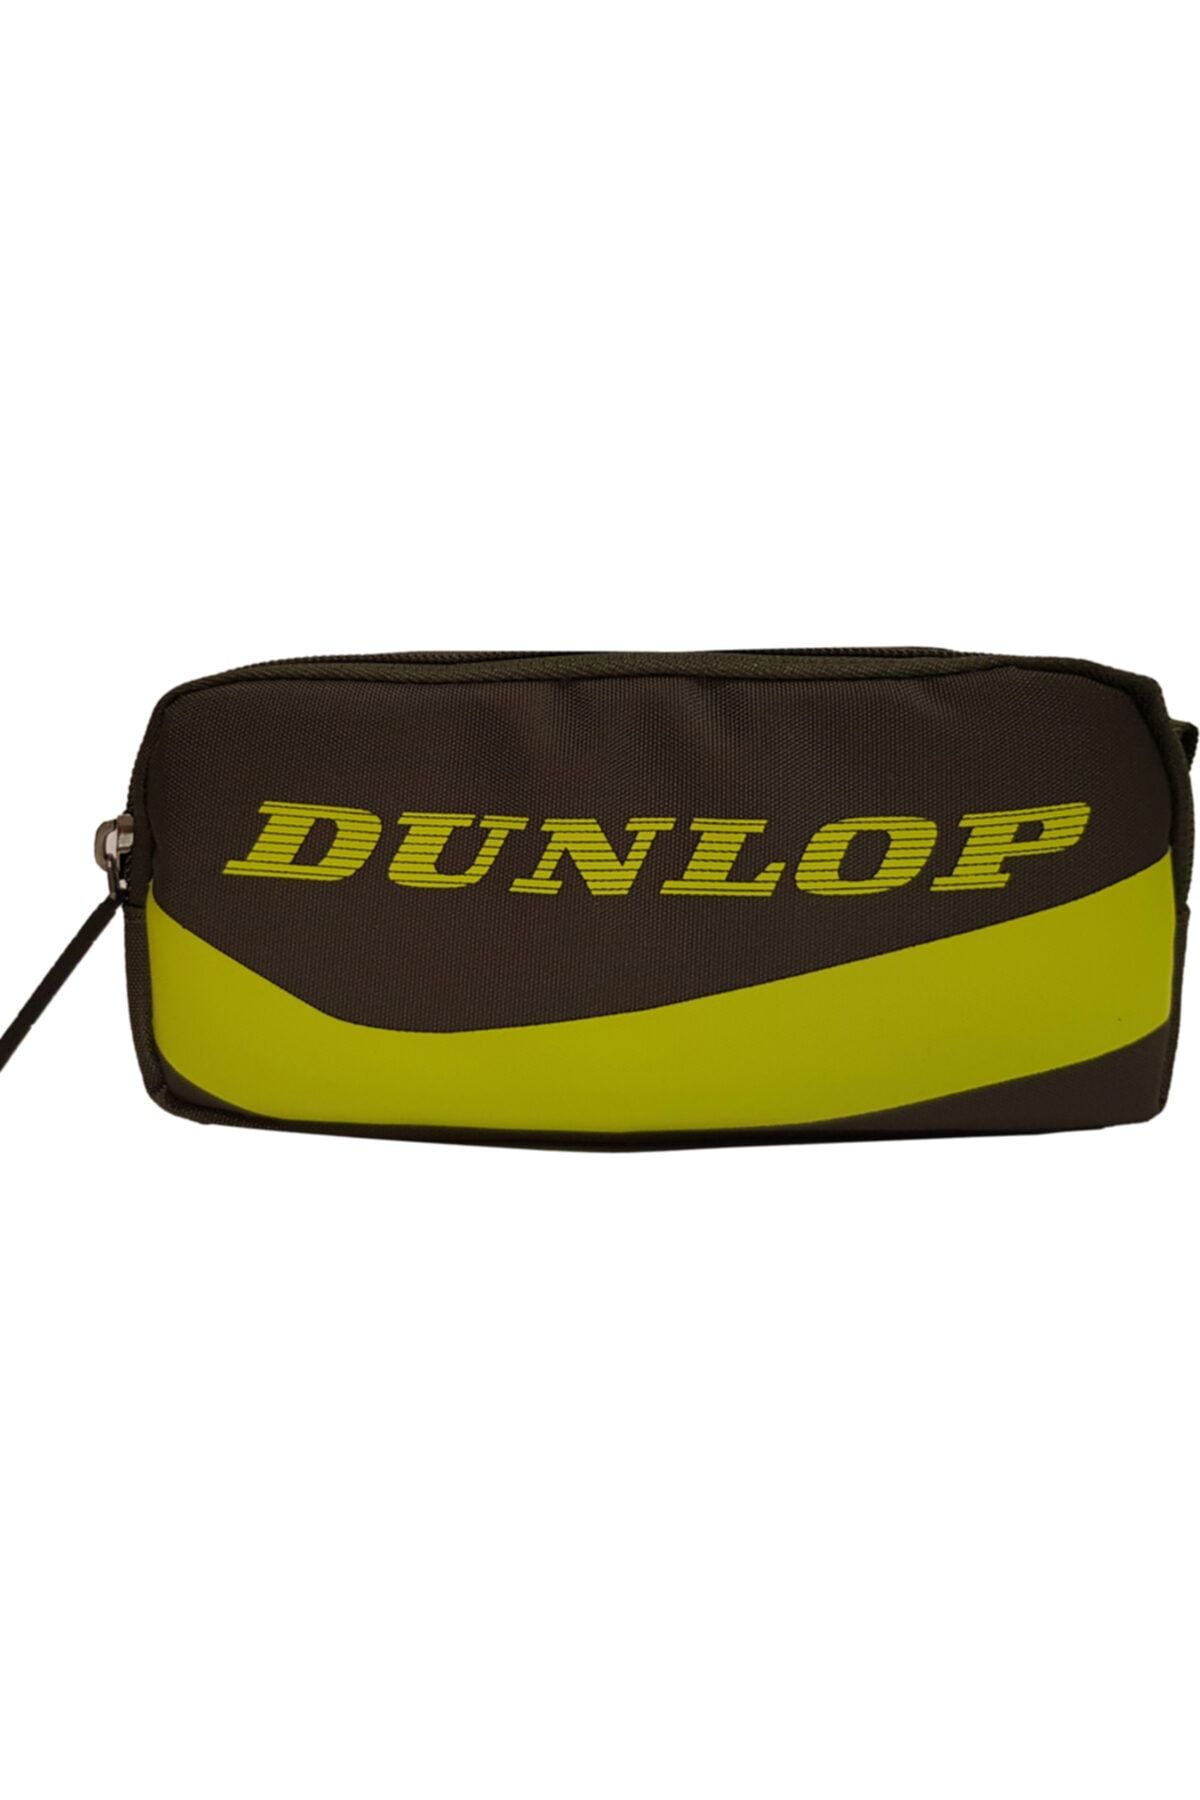 Dunlop Dpklk20518 Kalem Kutusu